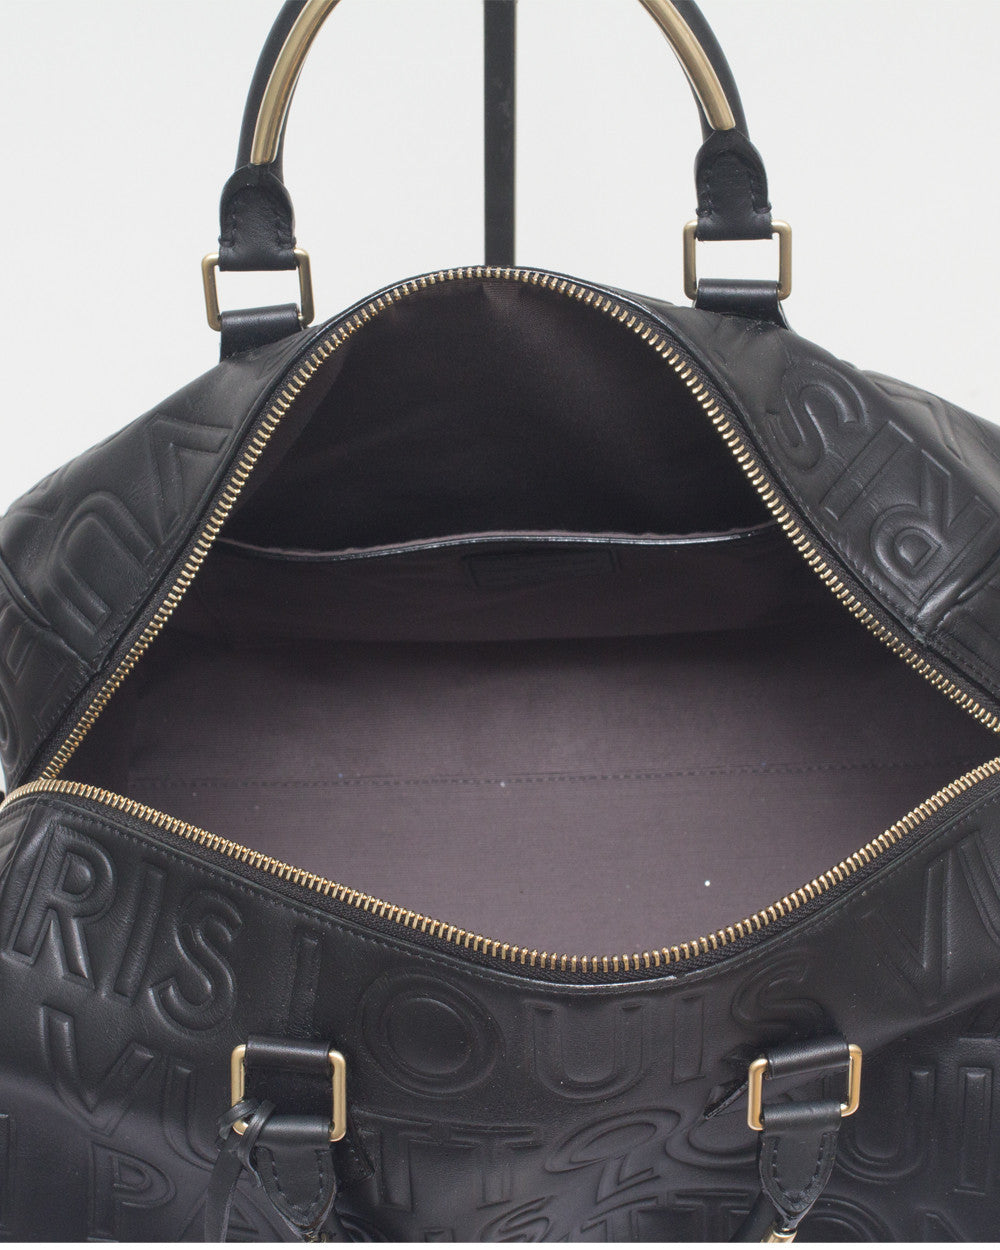 Louis Vuitton Black Speedy Paris Cube Bag – High Fashion Society